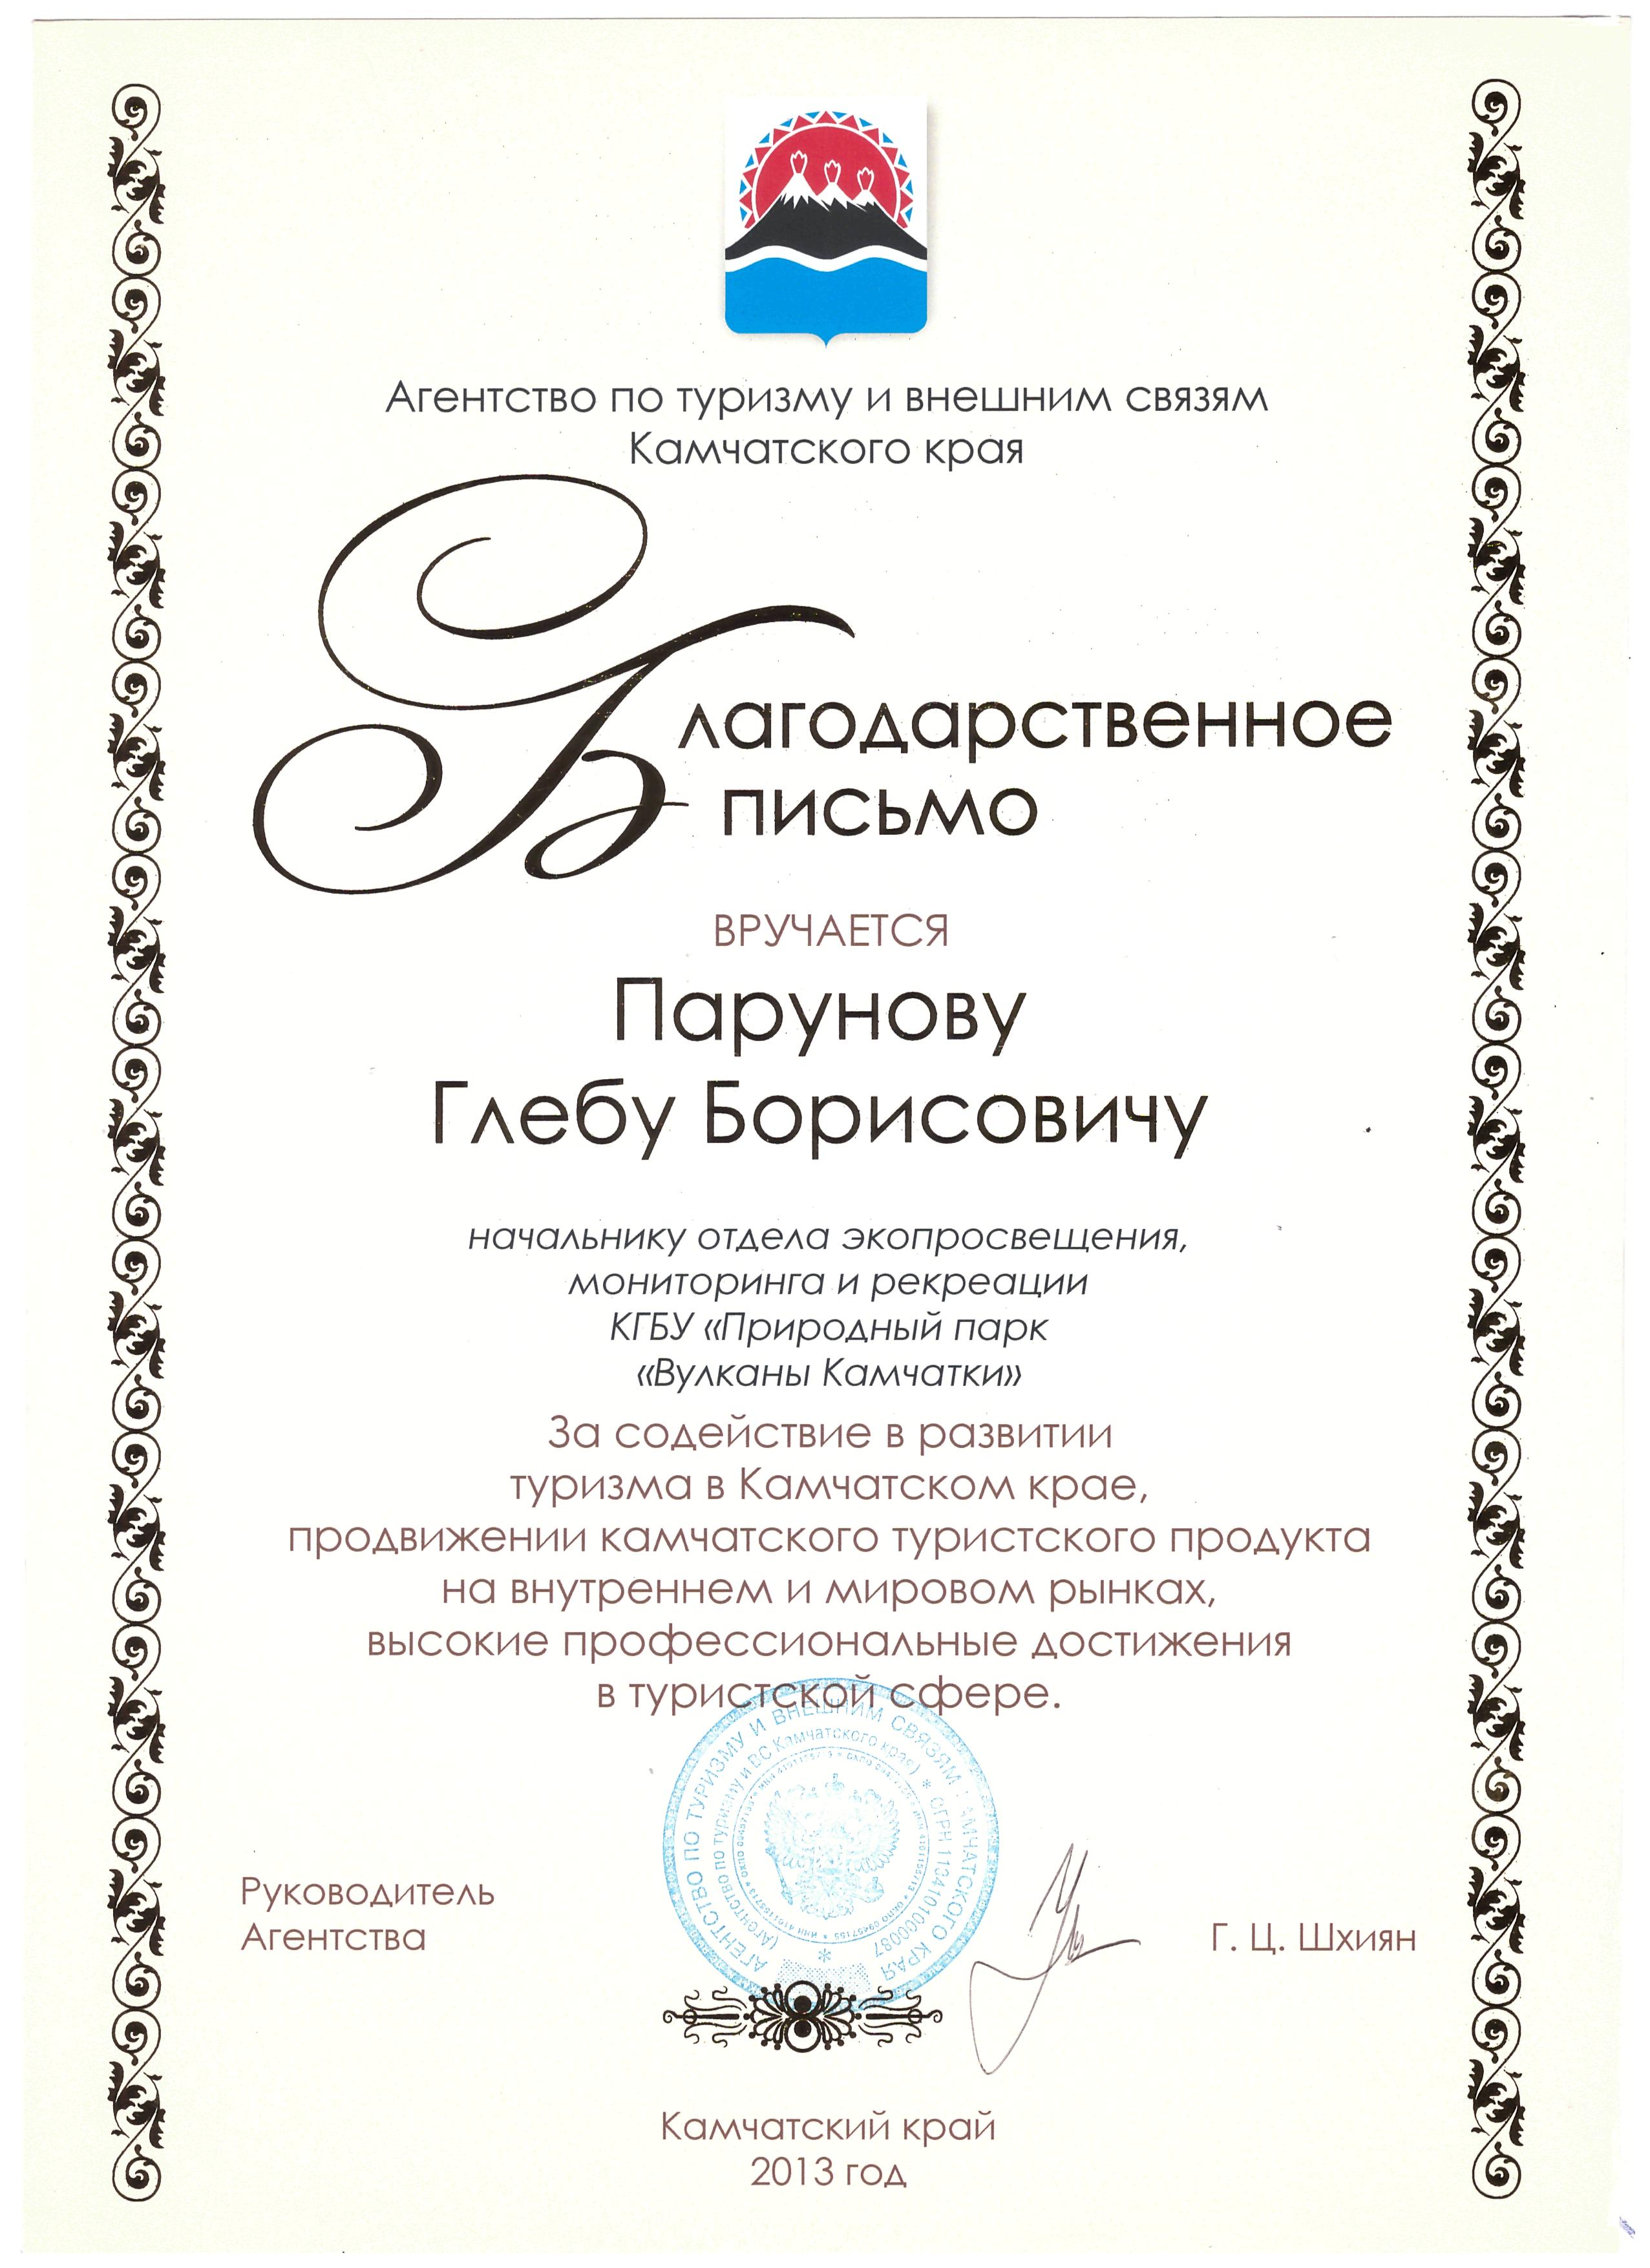 Благодарственное письмо от Агенства по туризму и внешним связям Камчатского края, 2013 год